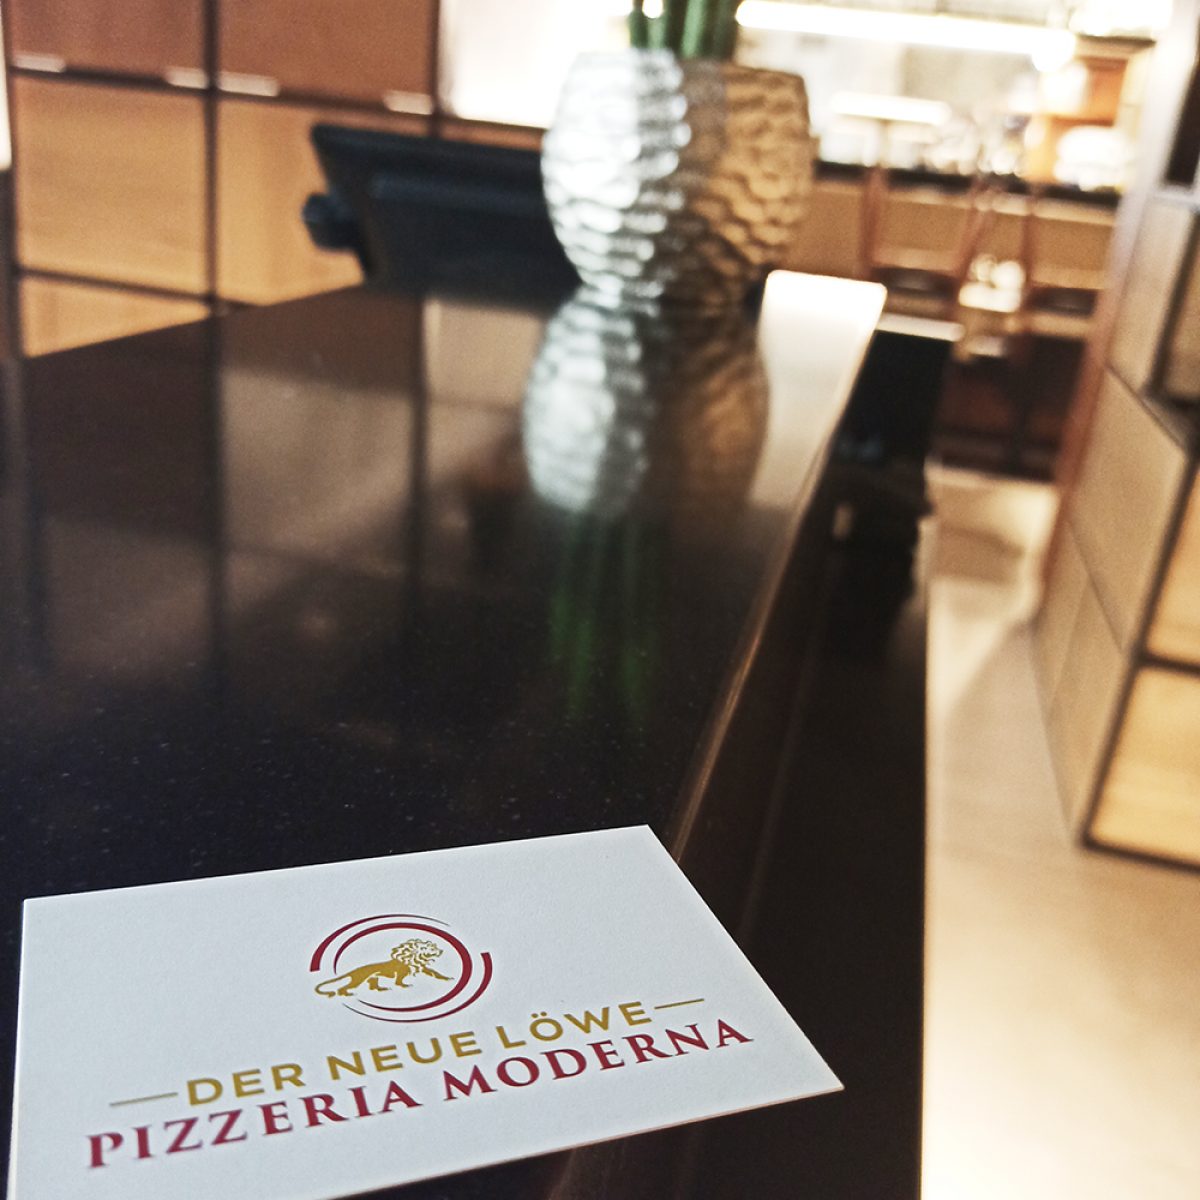 Pizzeria Moderna Der Neue Lowe